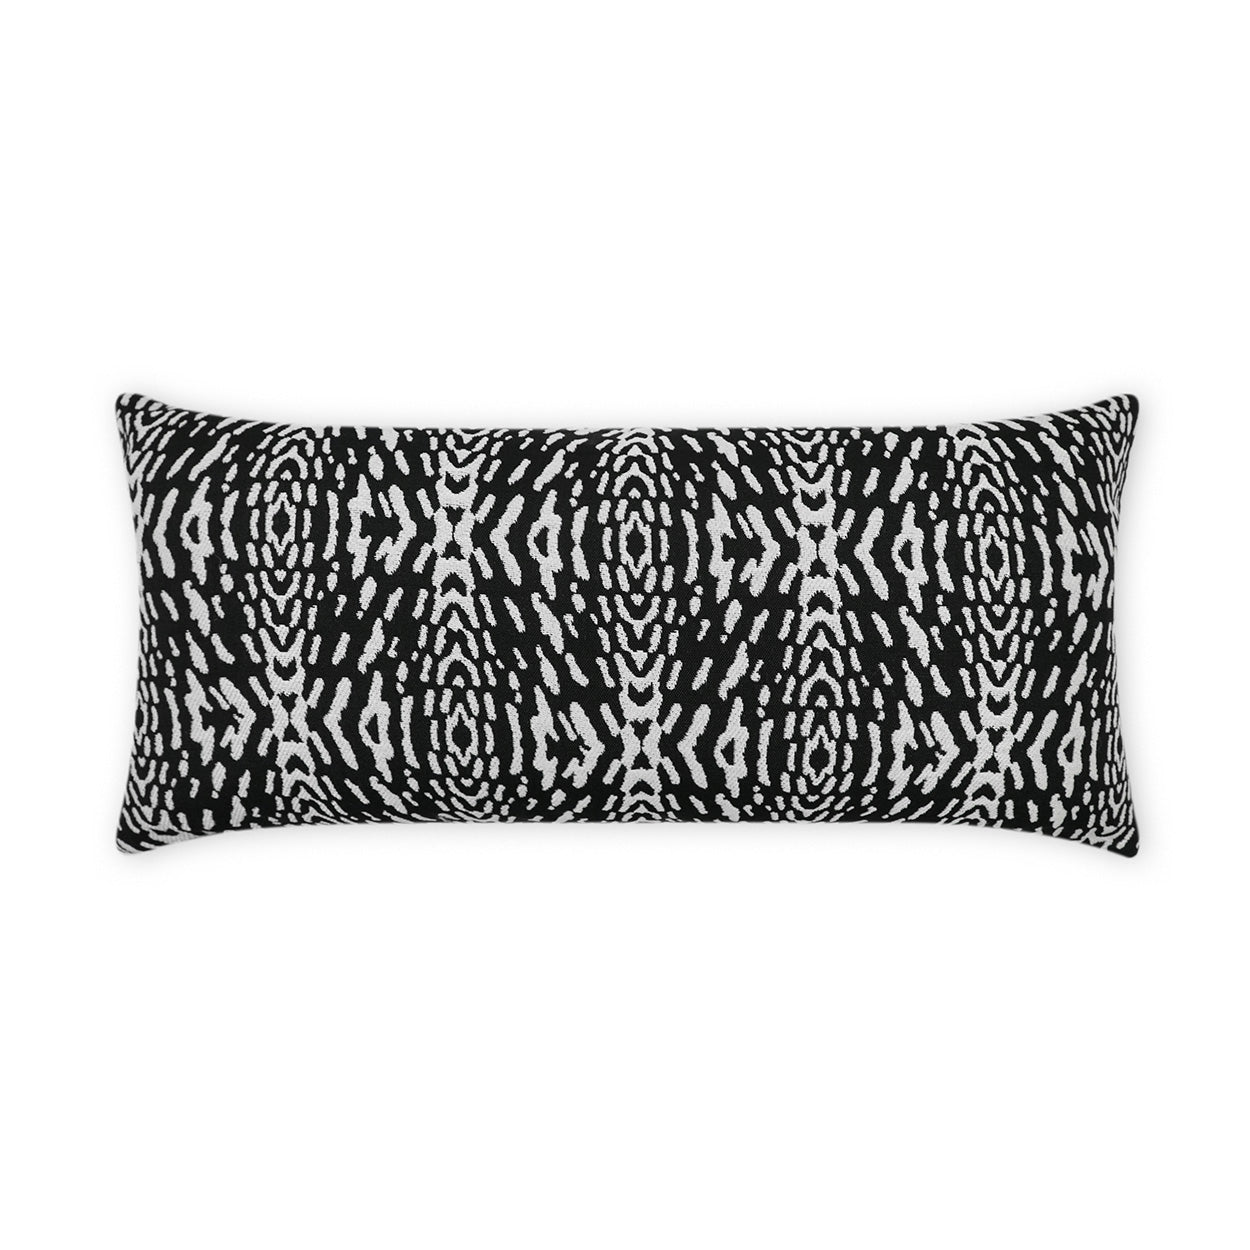 30188 Lumbar Pillow Black Piping